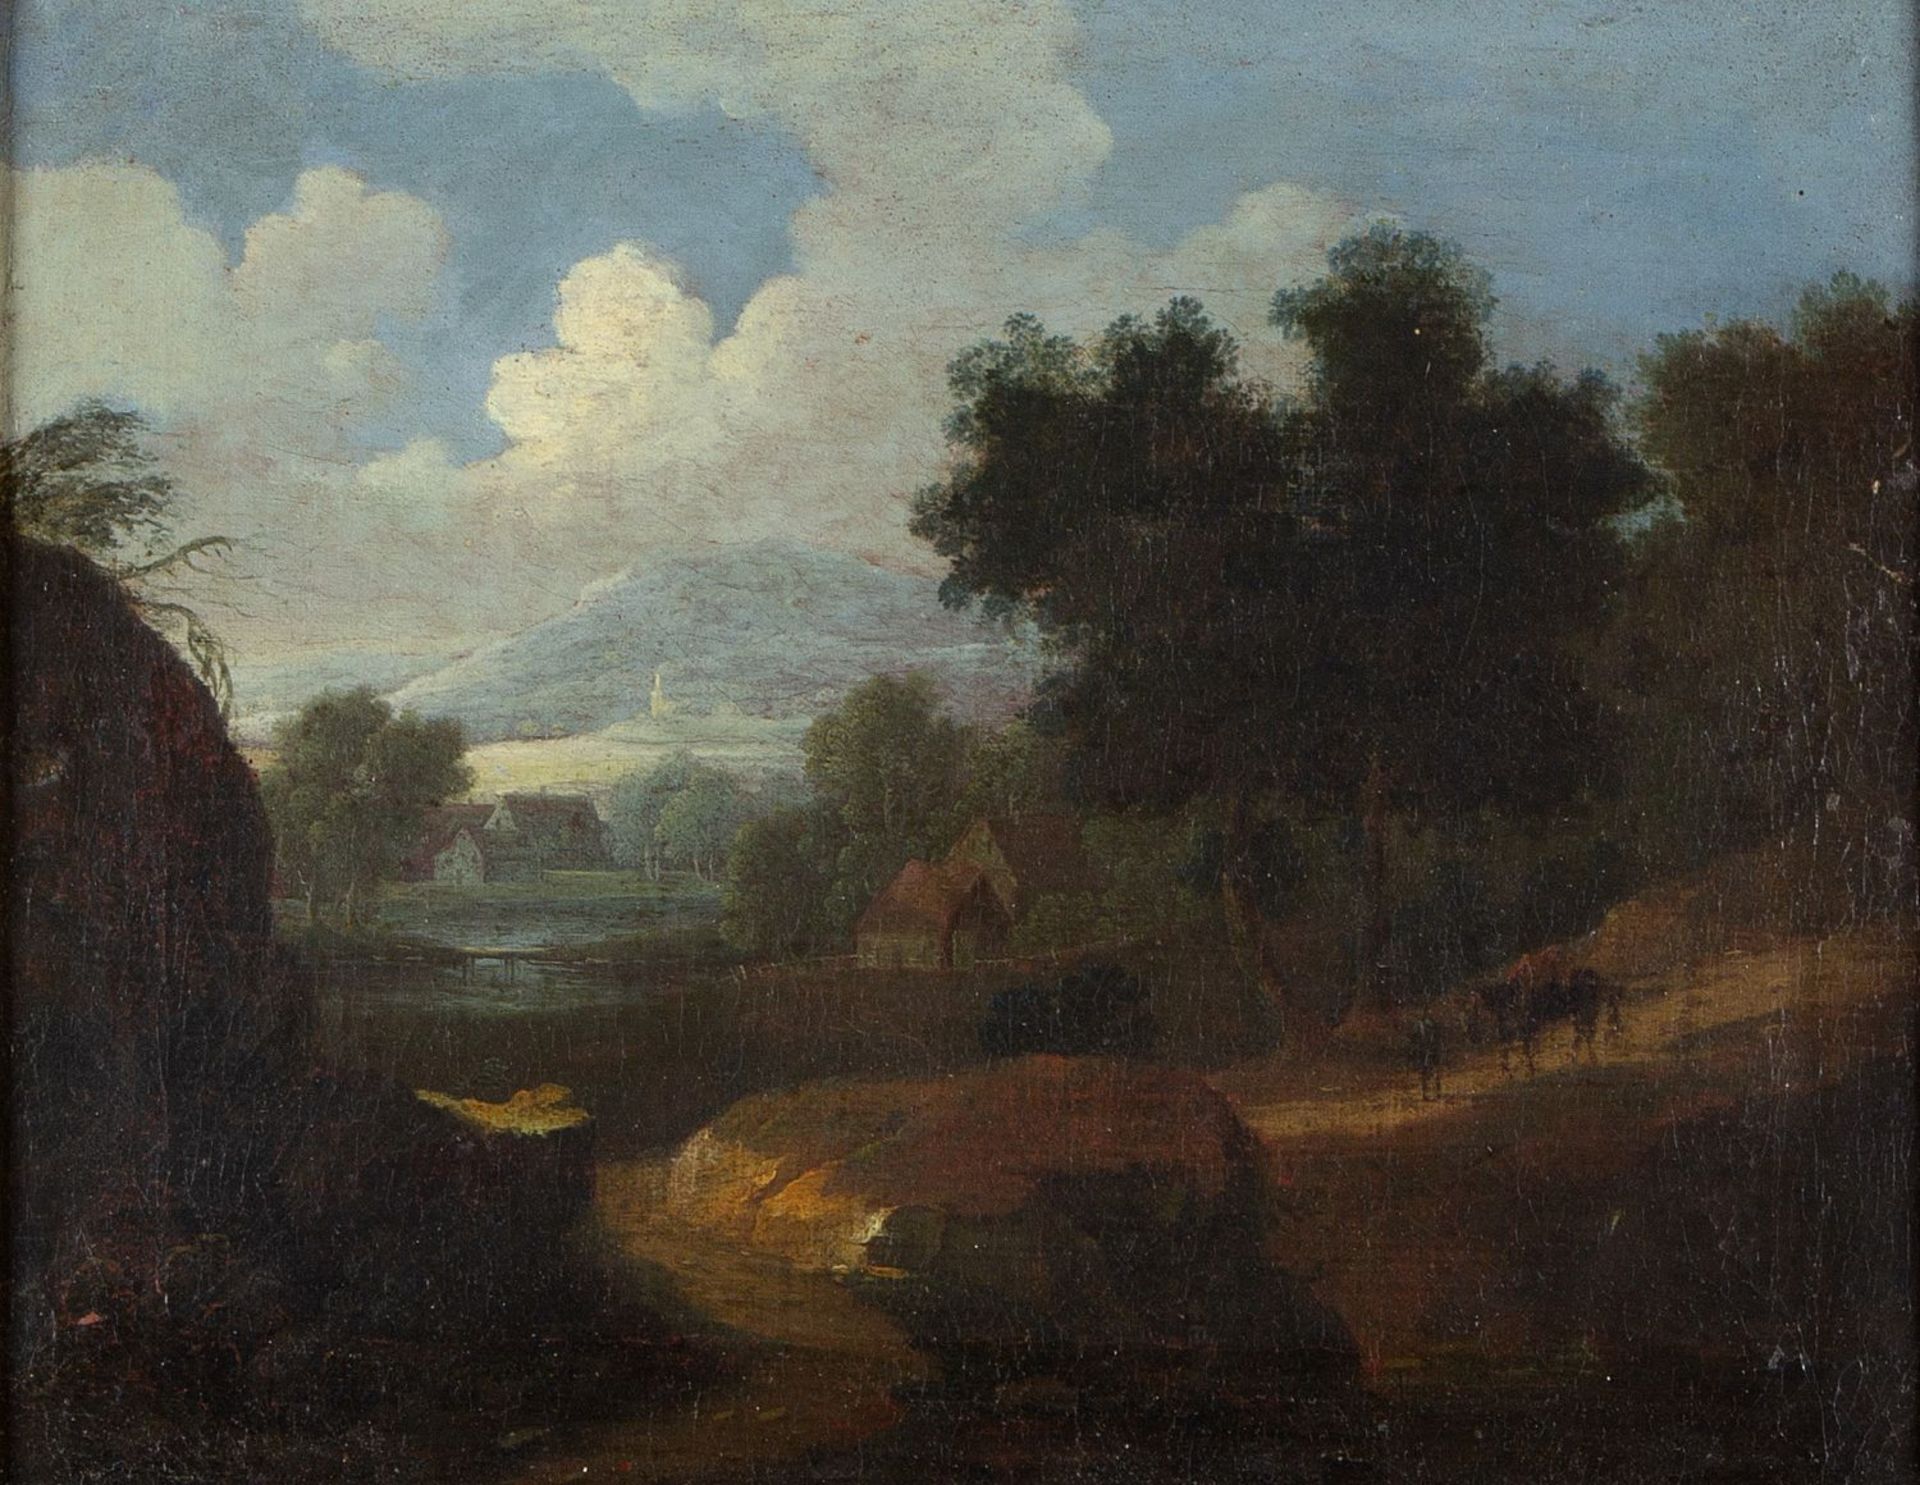 Niederlande, 18. Jh. Bergige Landschaft mit einem Fluss und Häusern. Öl/Lwd. 28,5 x 36,5 cm. Gerahmt